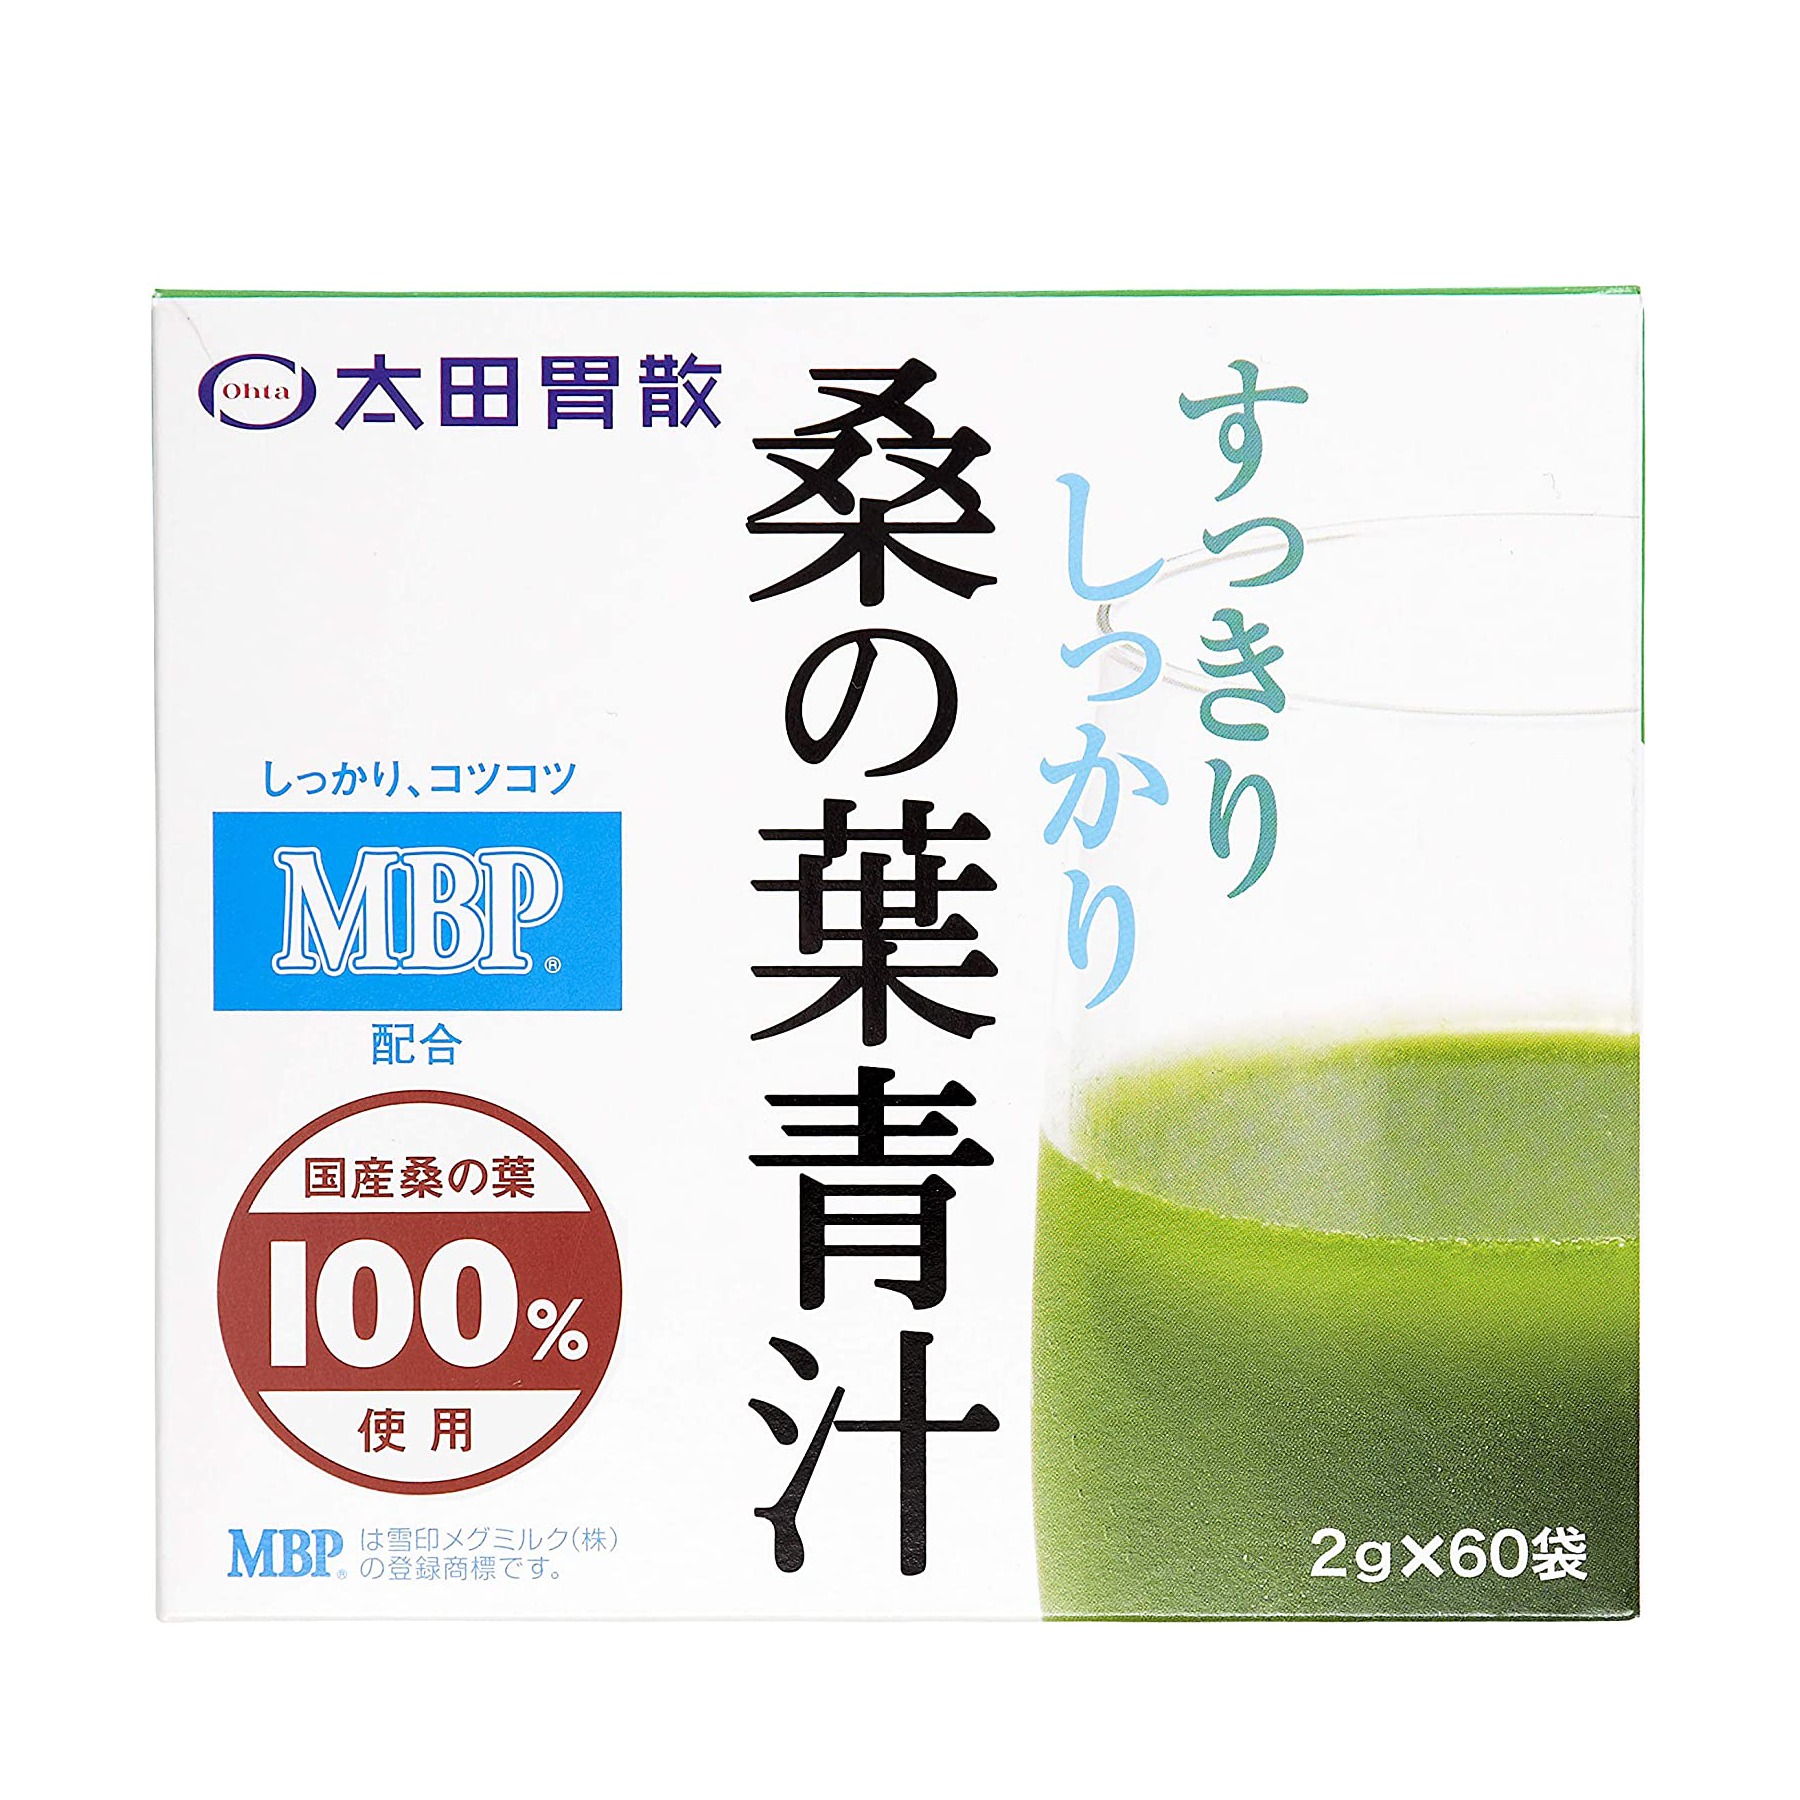 【おいしいの？栄養価が凄い】太田胃散 桑の葉青汁の特徴と口コミや評判と実感できそうな効果をレビュー